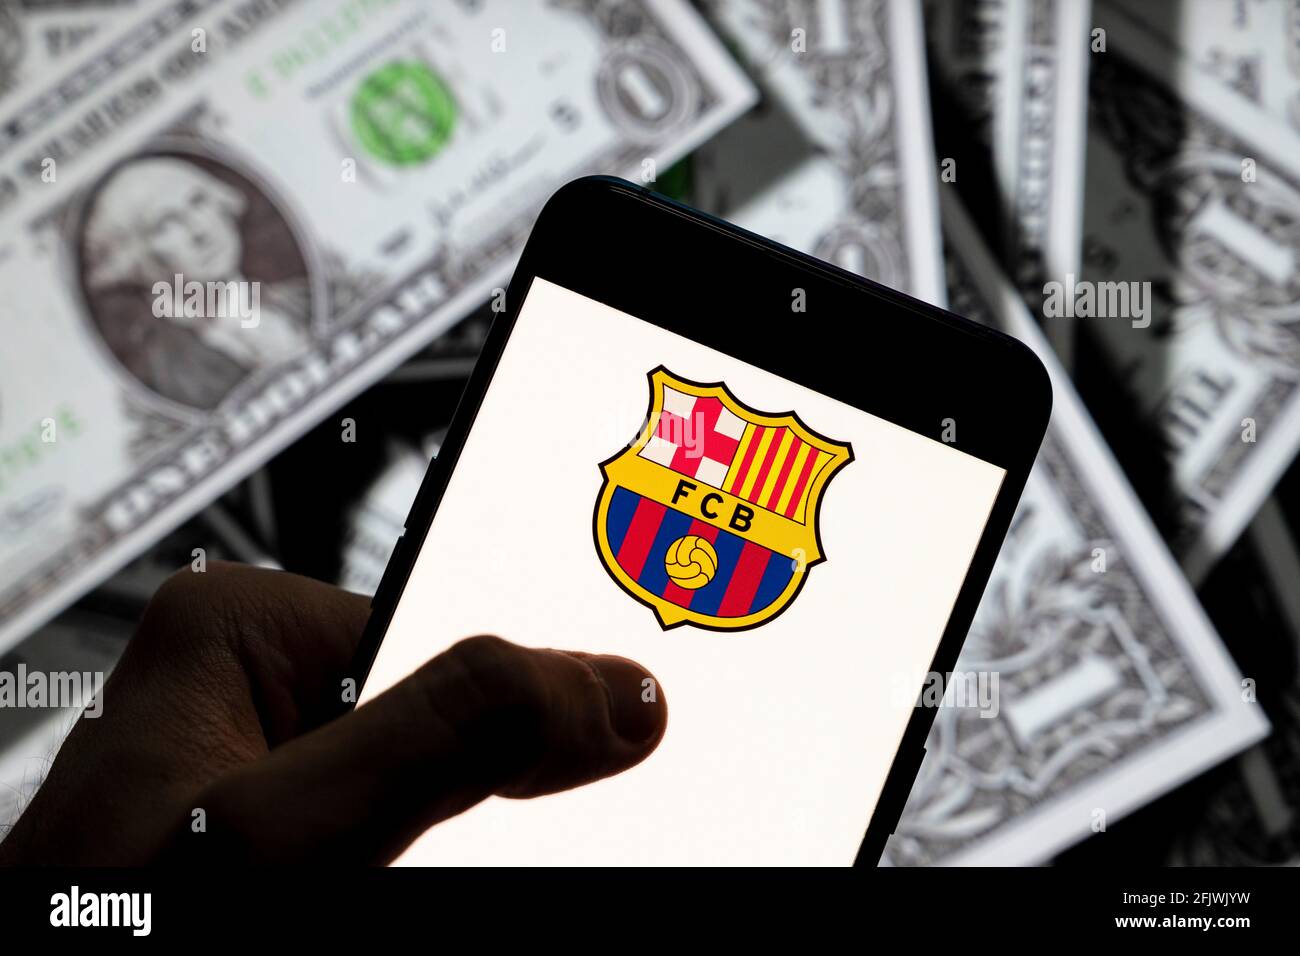 In questa illustrazione la squadra di calcio professionista spagnola il logo Futbol Club Barcelona visto su uno smartphone con la valuta USD (dollaro USA) sullo sfondo. Foto Stock